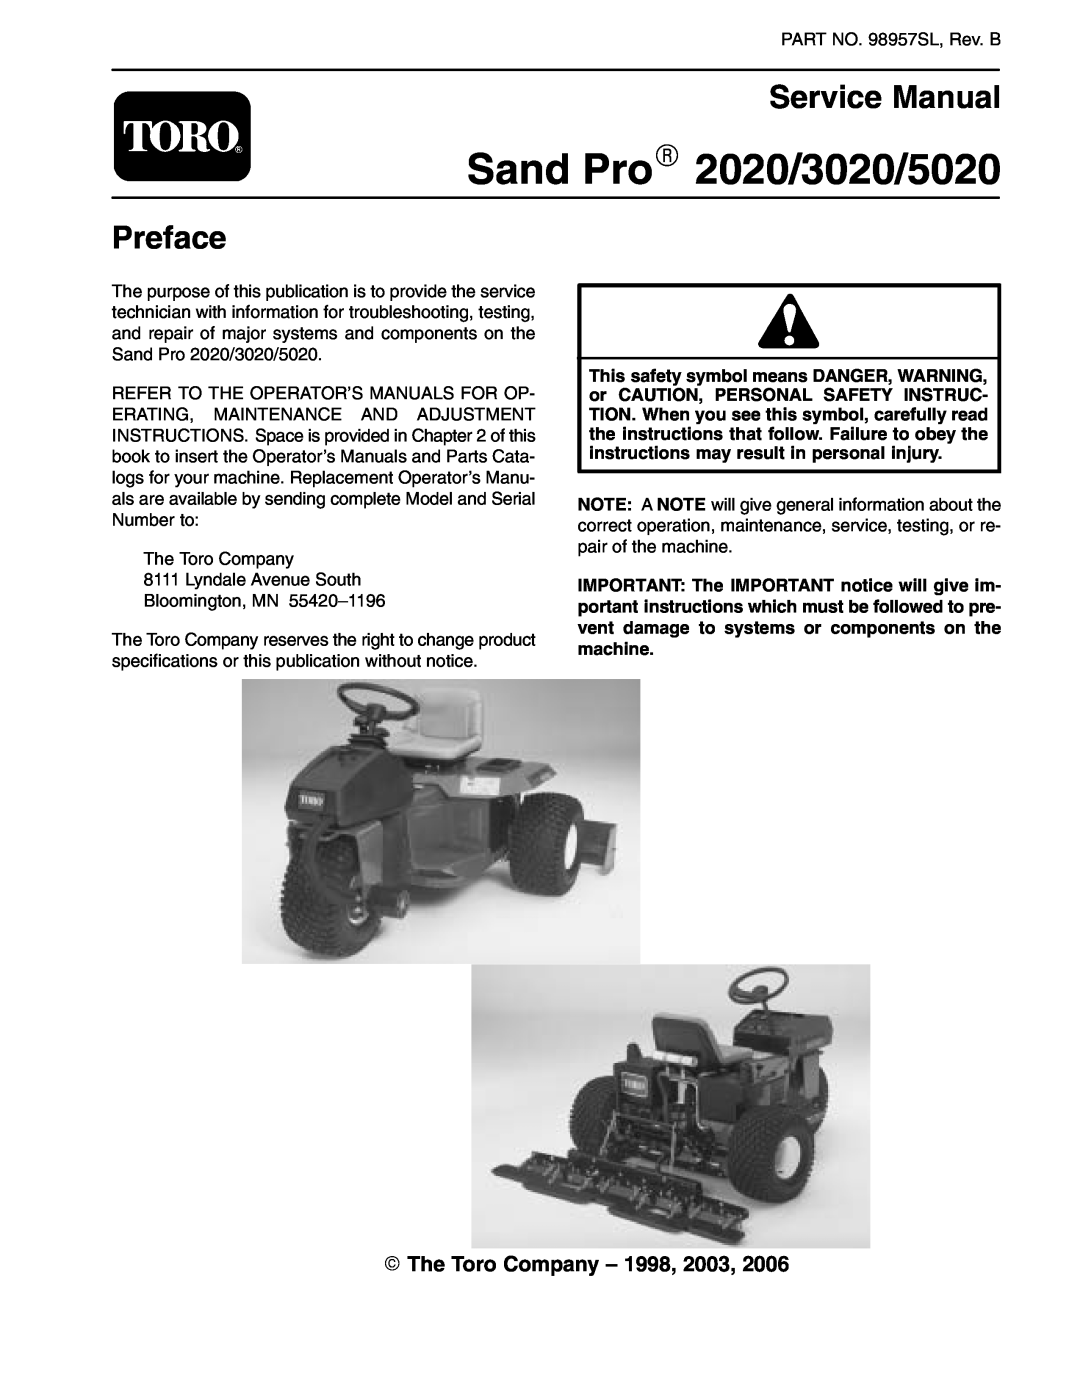 Toro service manual Sand ProR 2020/3020/5020, Service Manual, Preface, E The Toro Company - 1998, 2003 